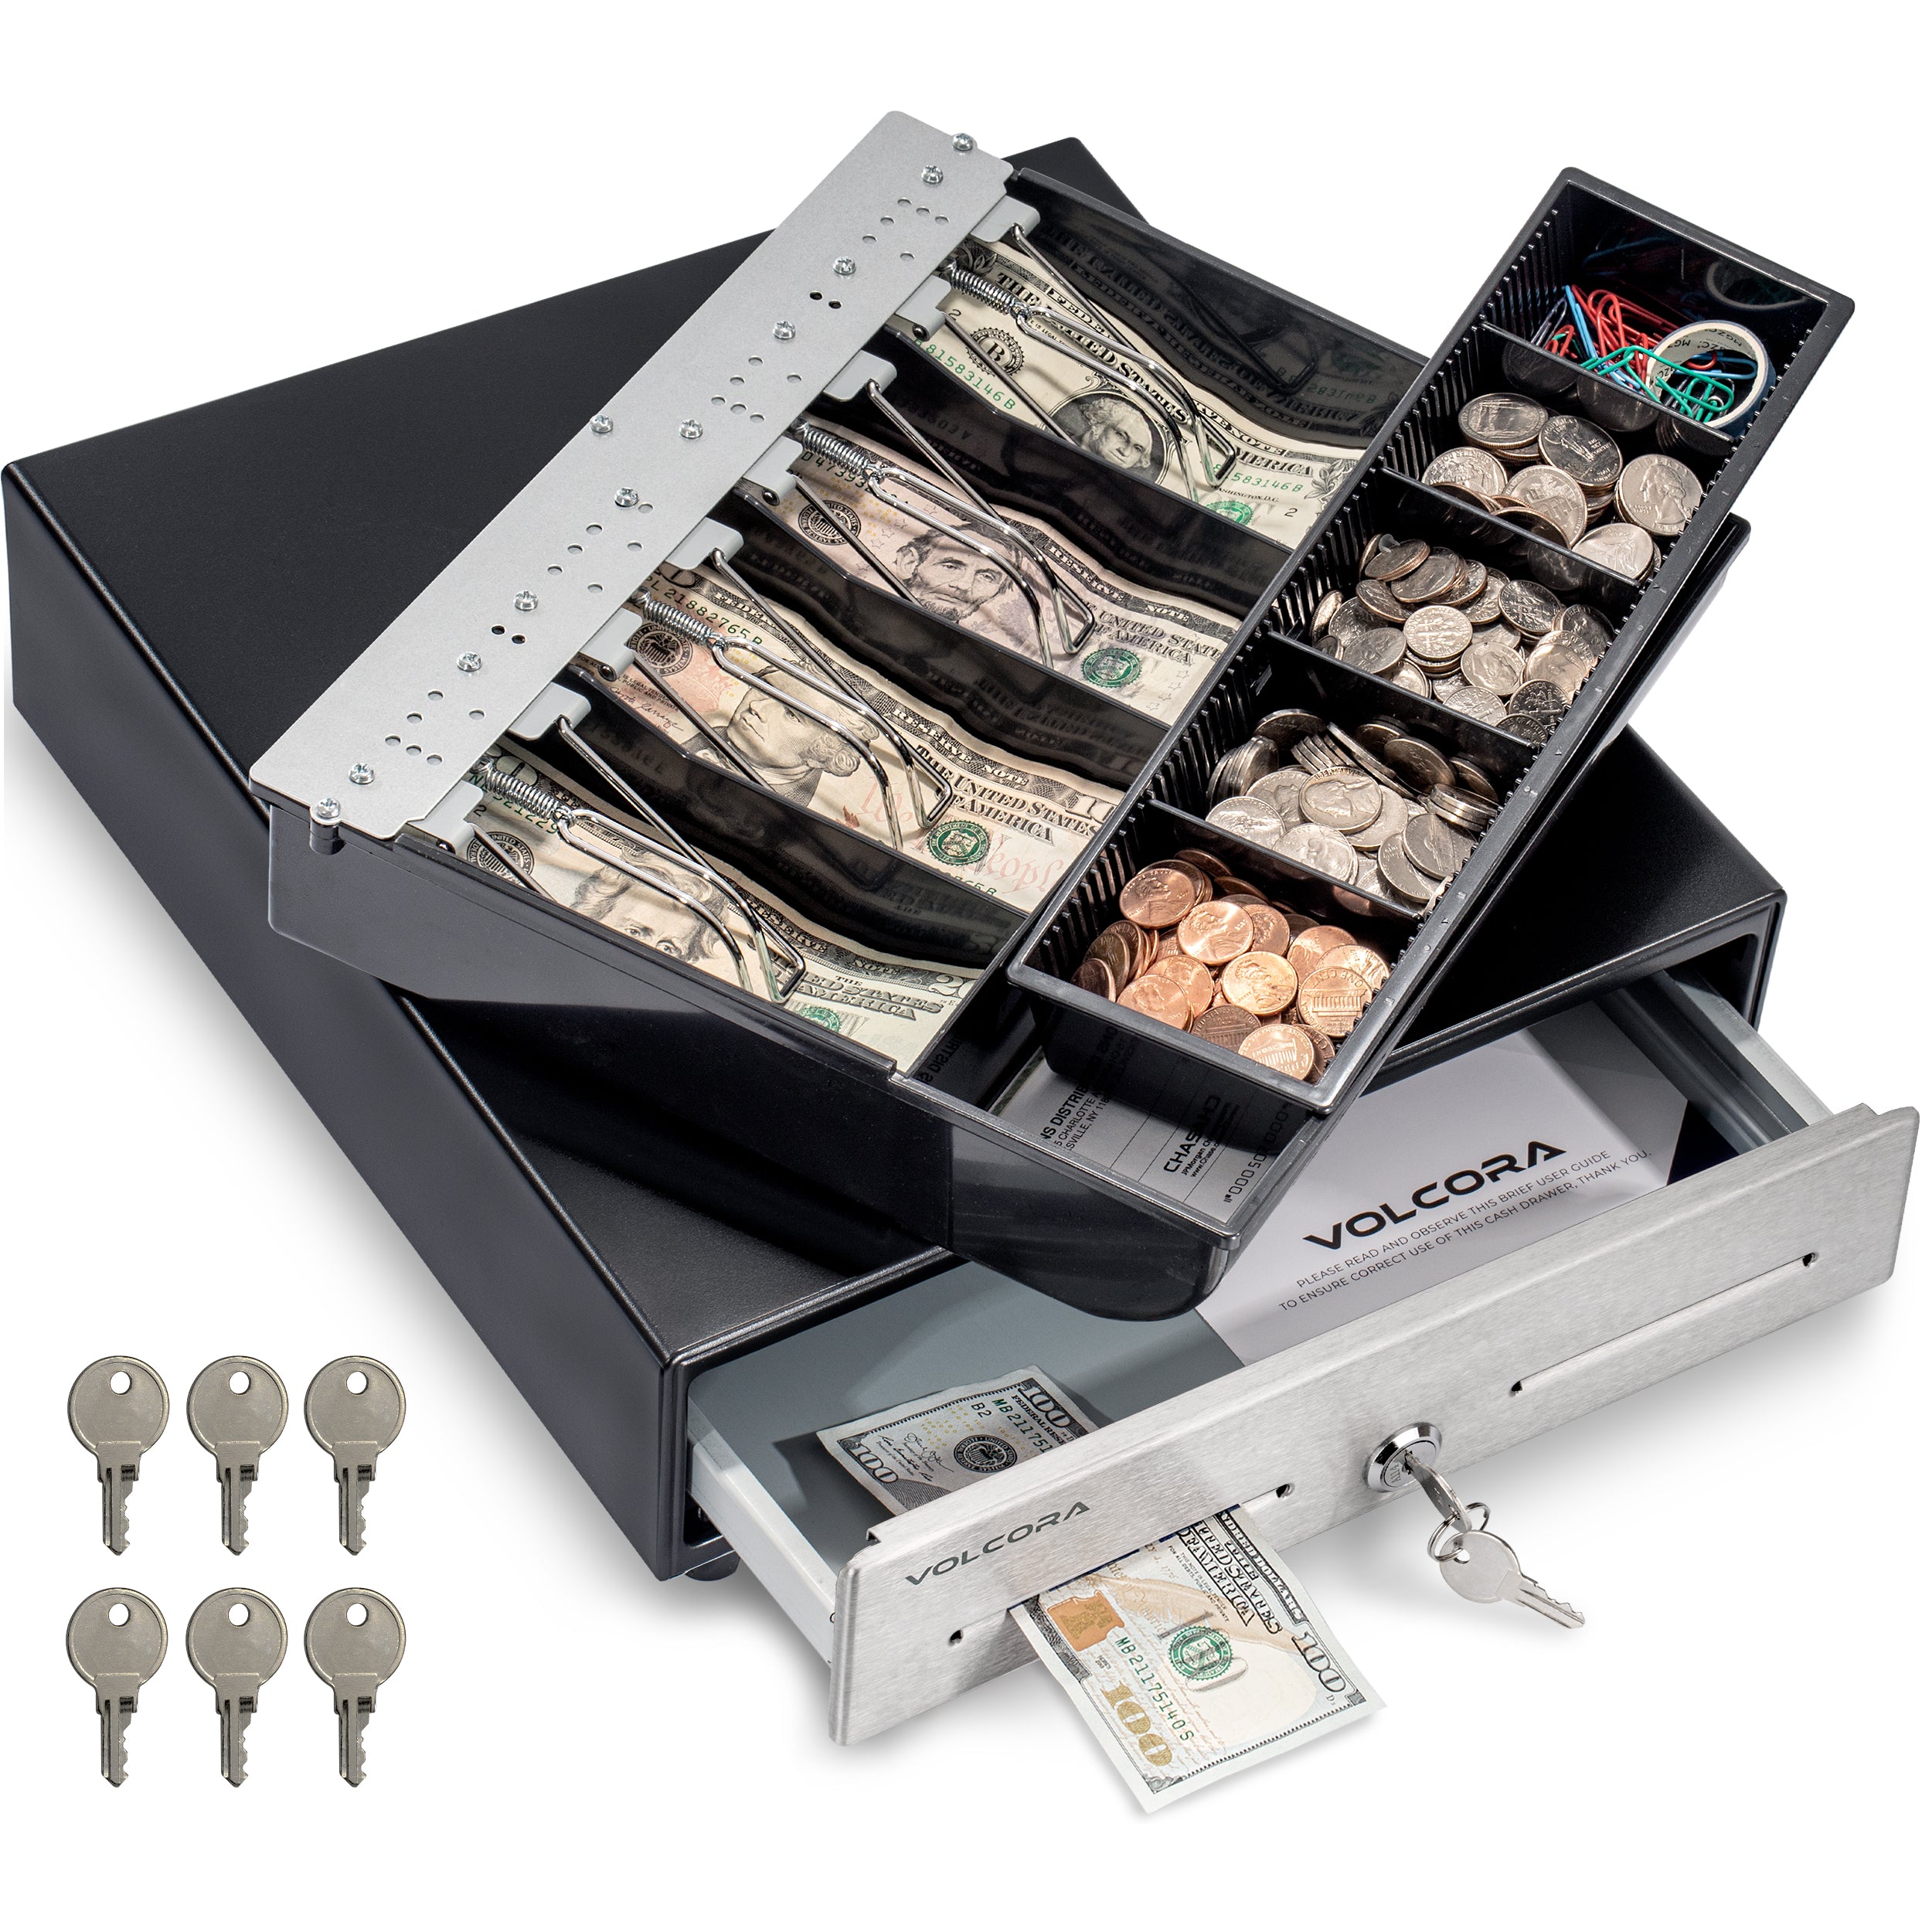 Mini cajón de caja registradora de 13'', 4 billetes/5 monedas, negro, frente de acero inoxidable, bandejas de efectivo totalmente extraíbles